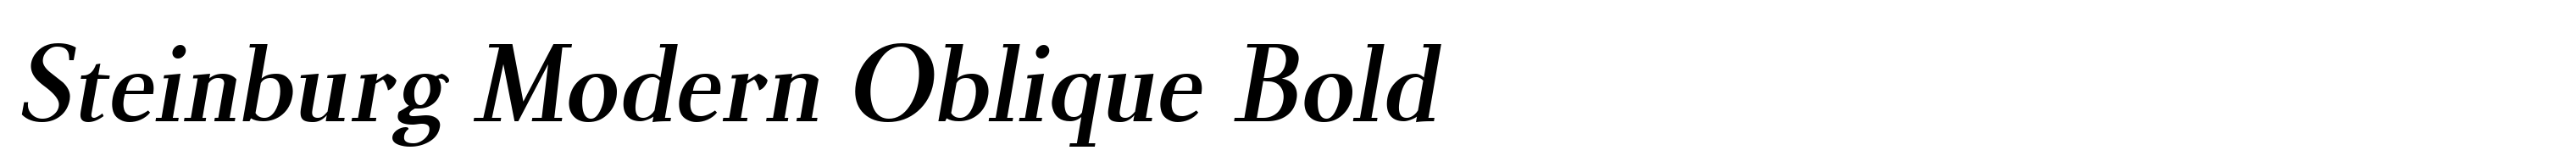 Steinburg Modern Oblique Bold